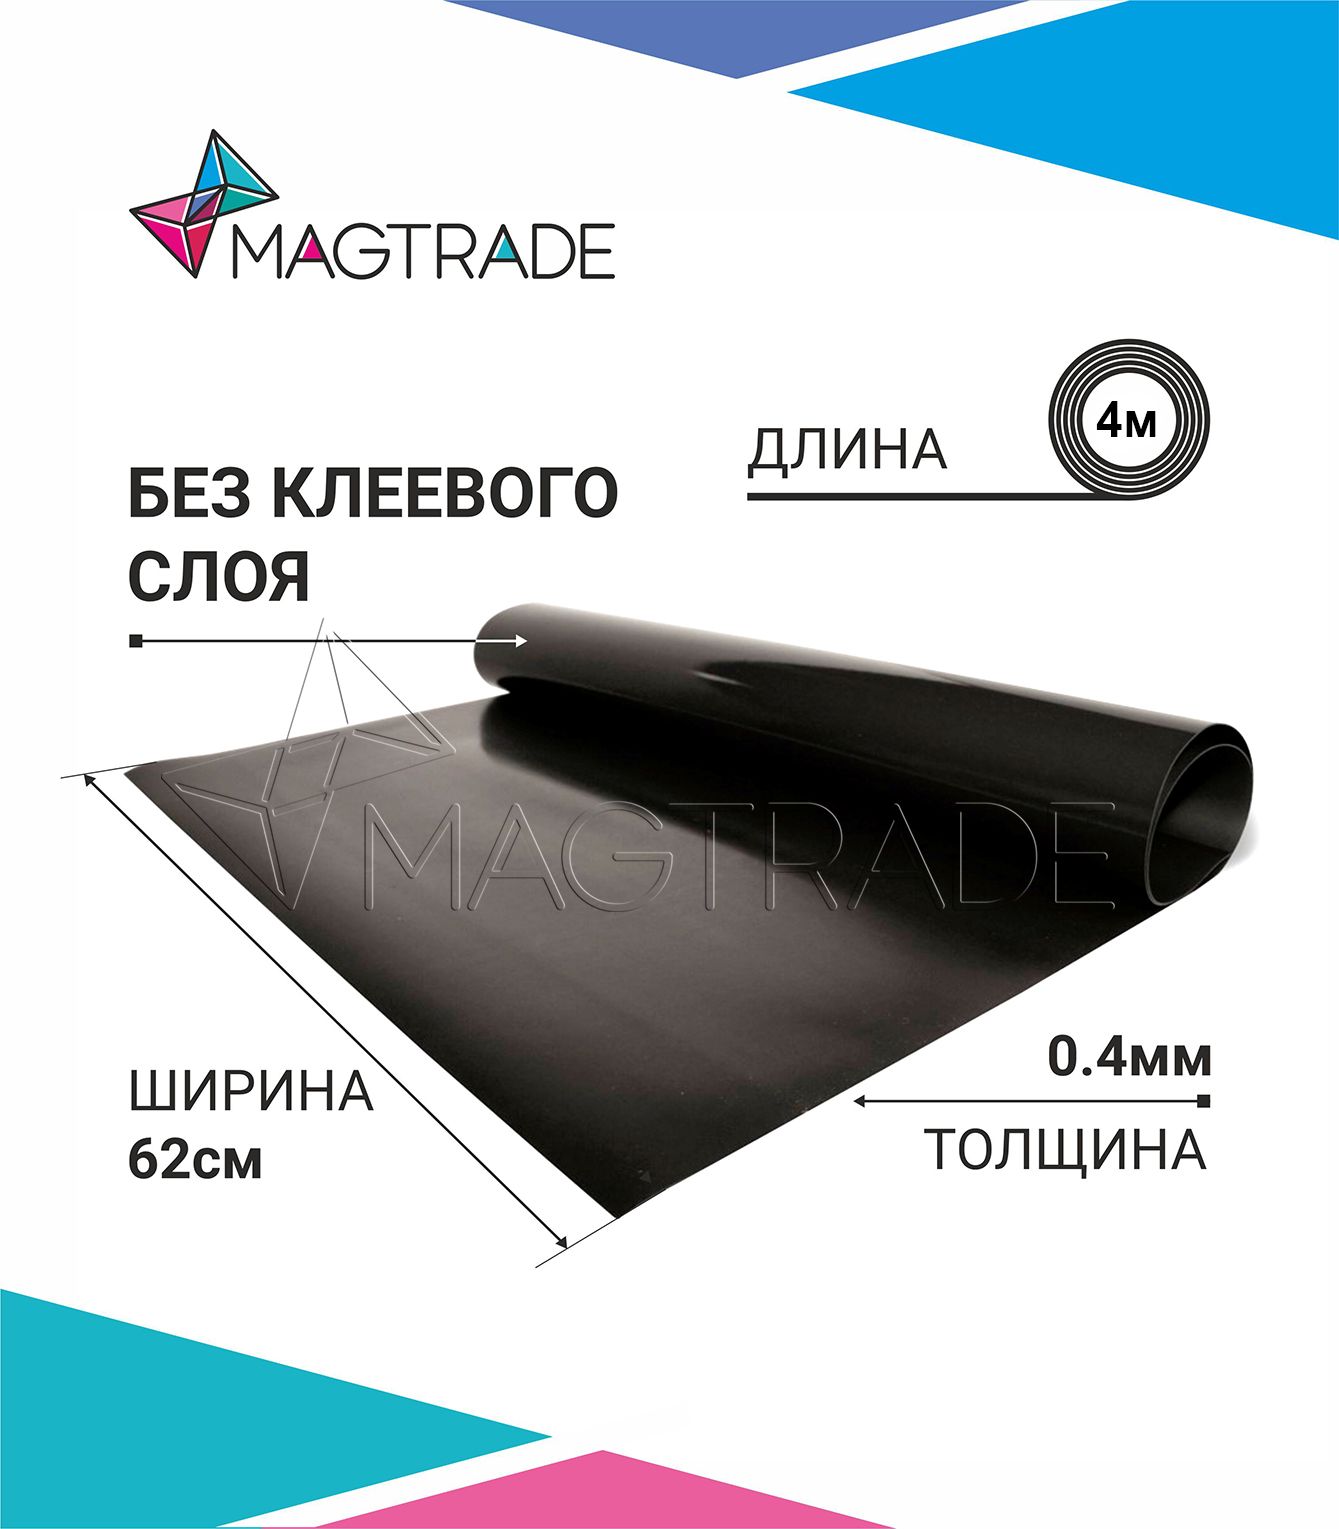 Магнитный винил MAGTRADE без клеевого слоя 0,62 х 4 м, толщина 0,4 мм, лист 4 метра магнитный винил magtrade с клеем толщина 0 9 мм лист 5м